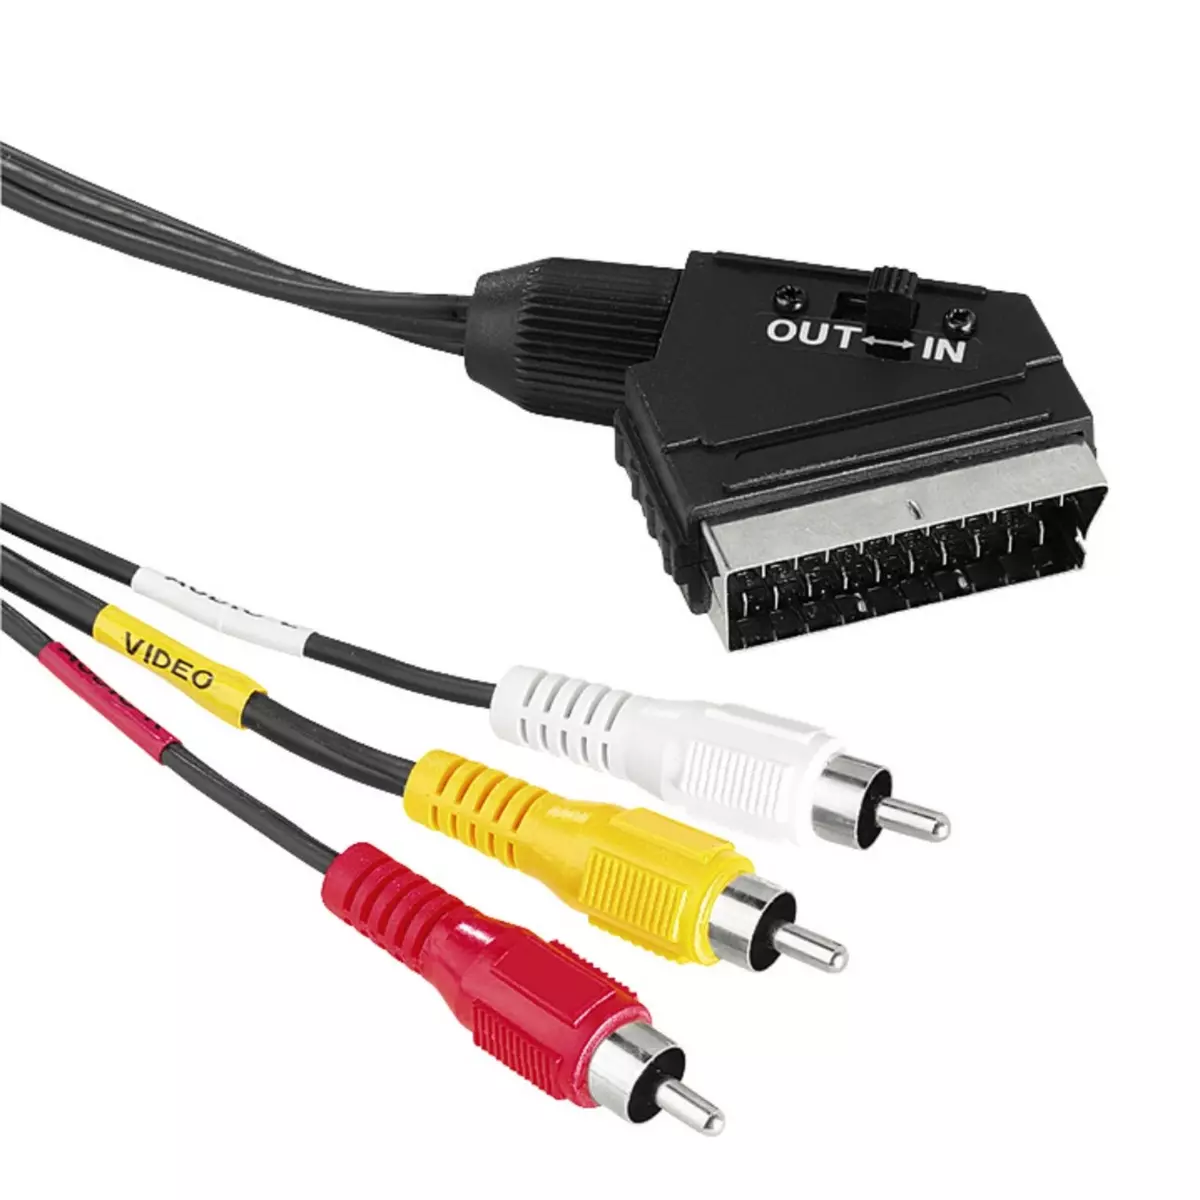 Câble péritel premium Powteq de 1,5 mètre - Audio et vidéo